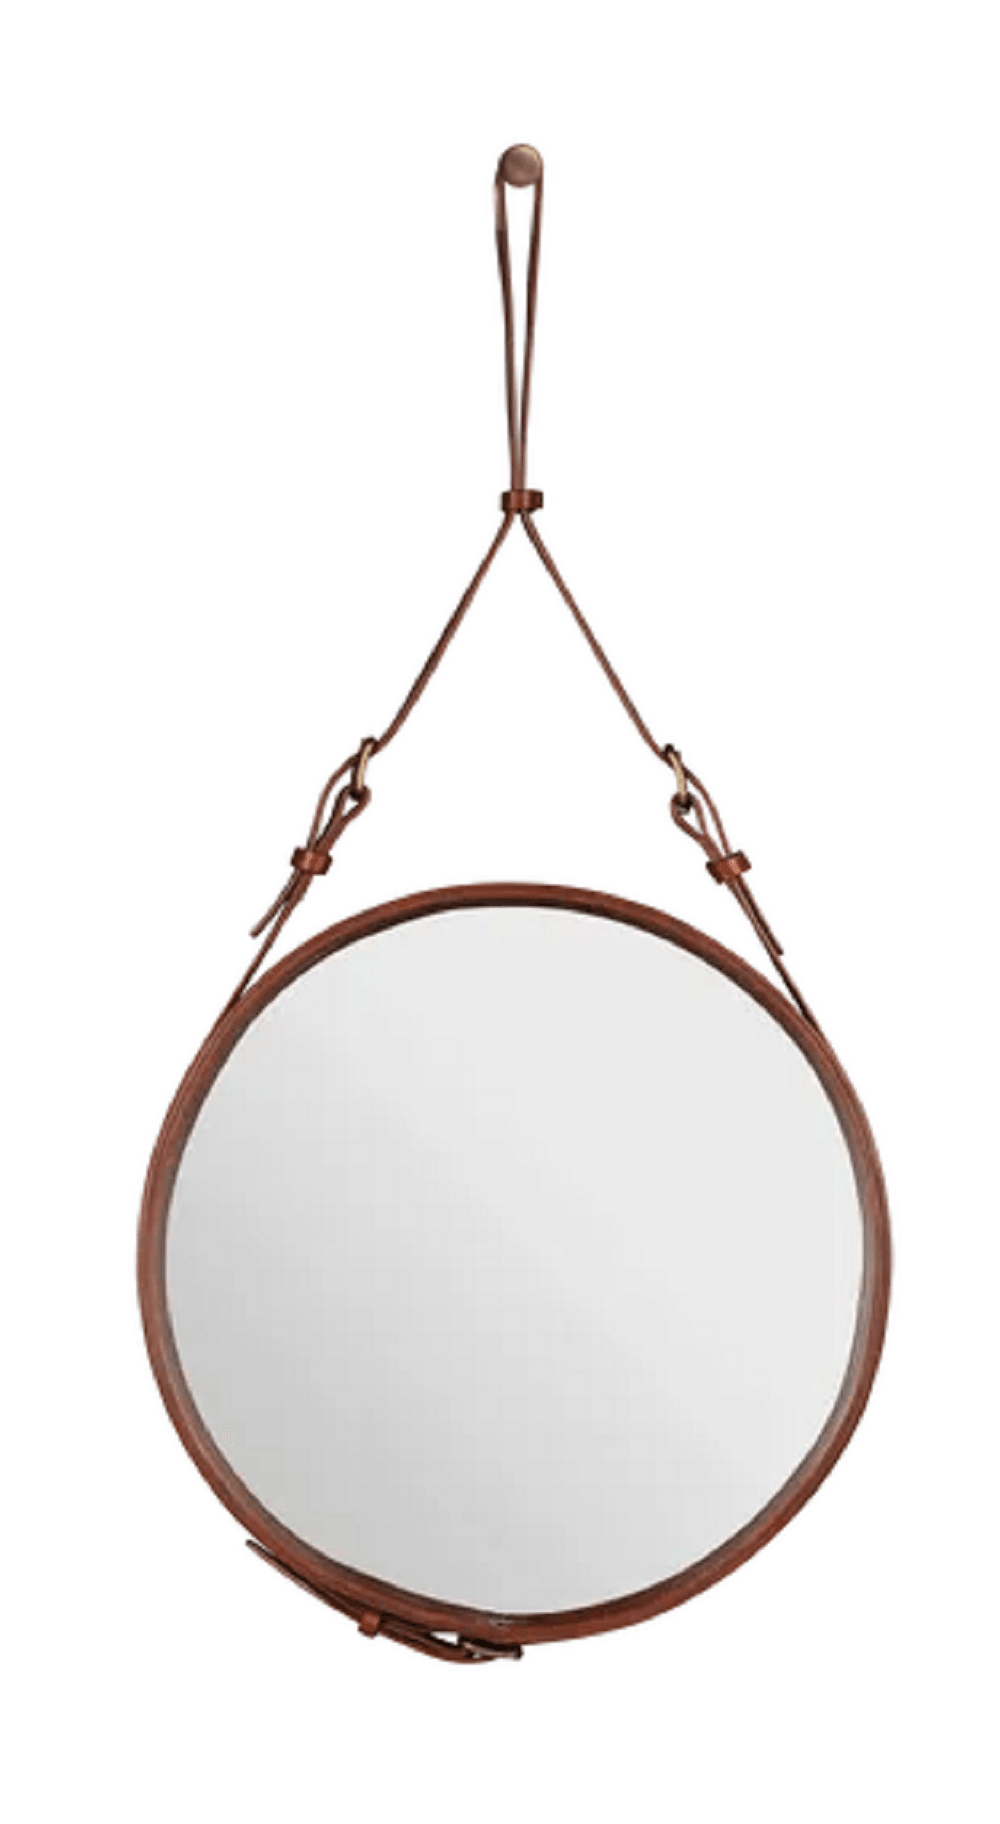 Gubi Adnet Spiegel Circulaire - runder Spiegel - Durchmesser 45 cm - Tan Leather--3